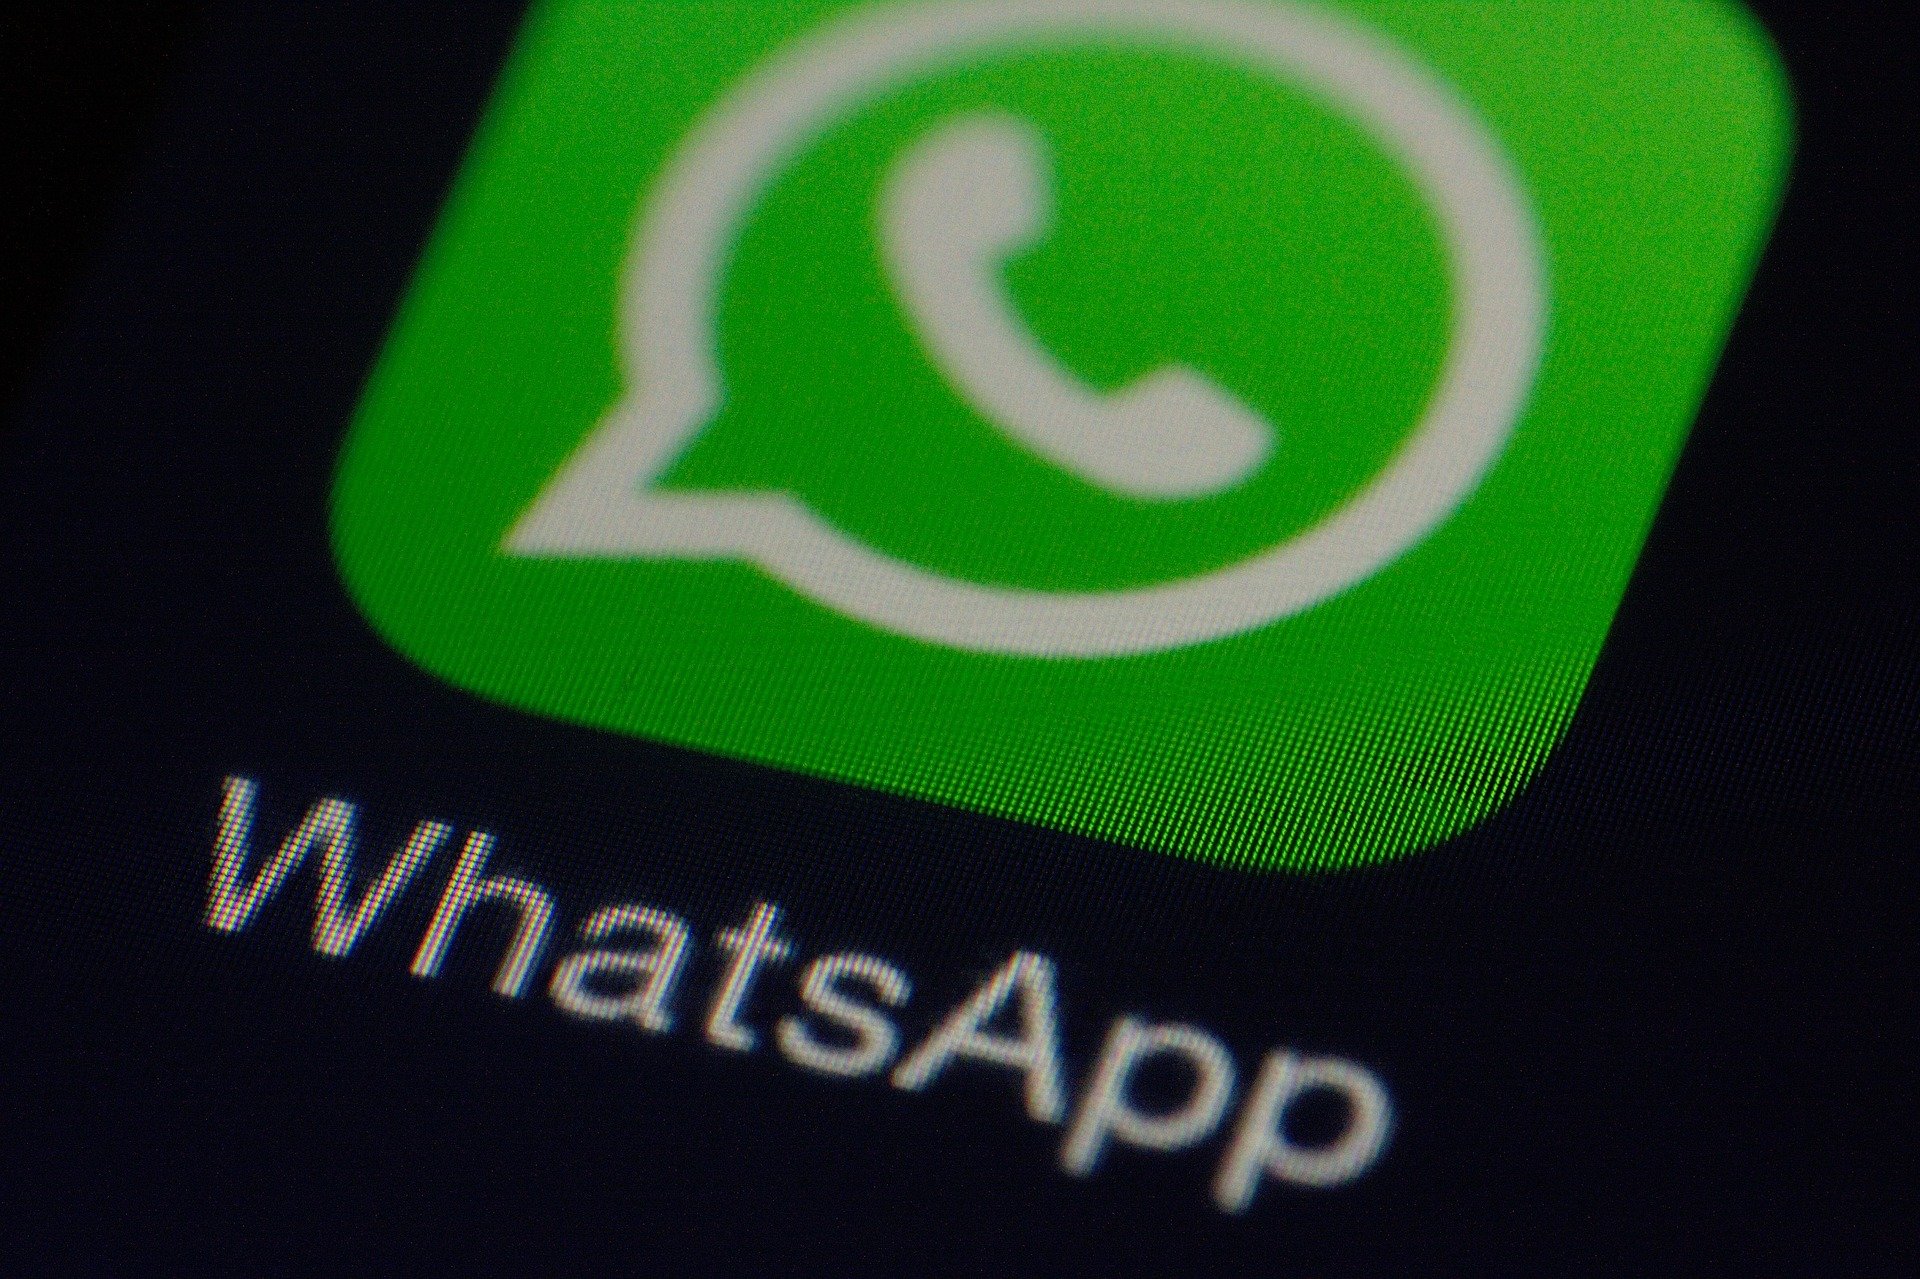 WhatsApp es una de las plataformas de mensajería más utilizada. (Foto Prensa Libre: Pixabay)
